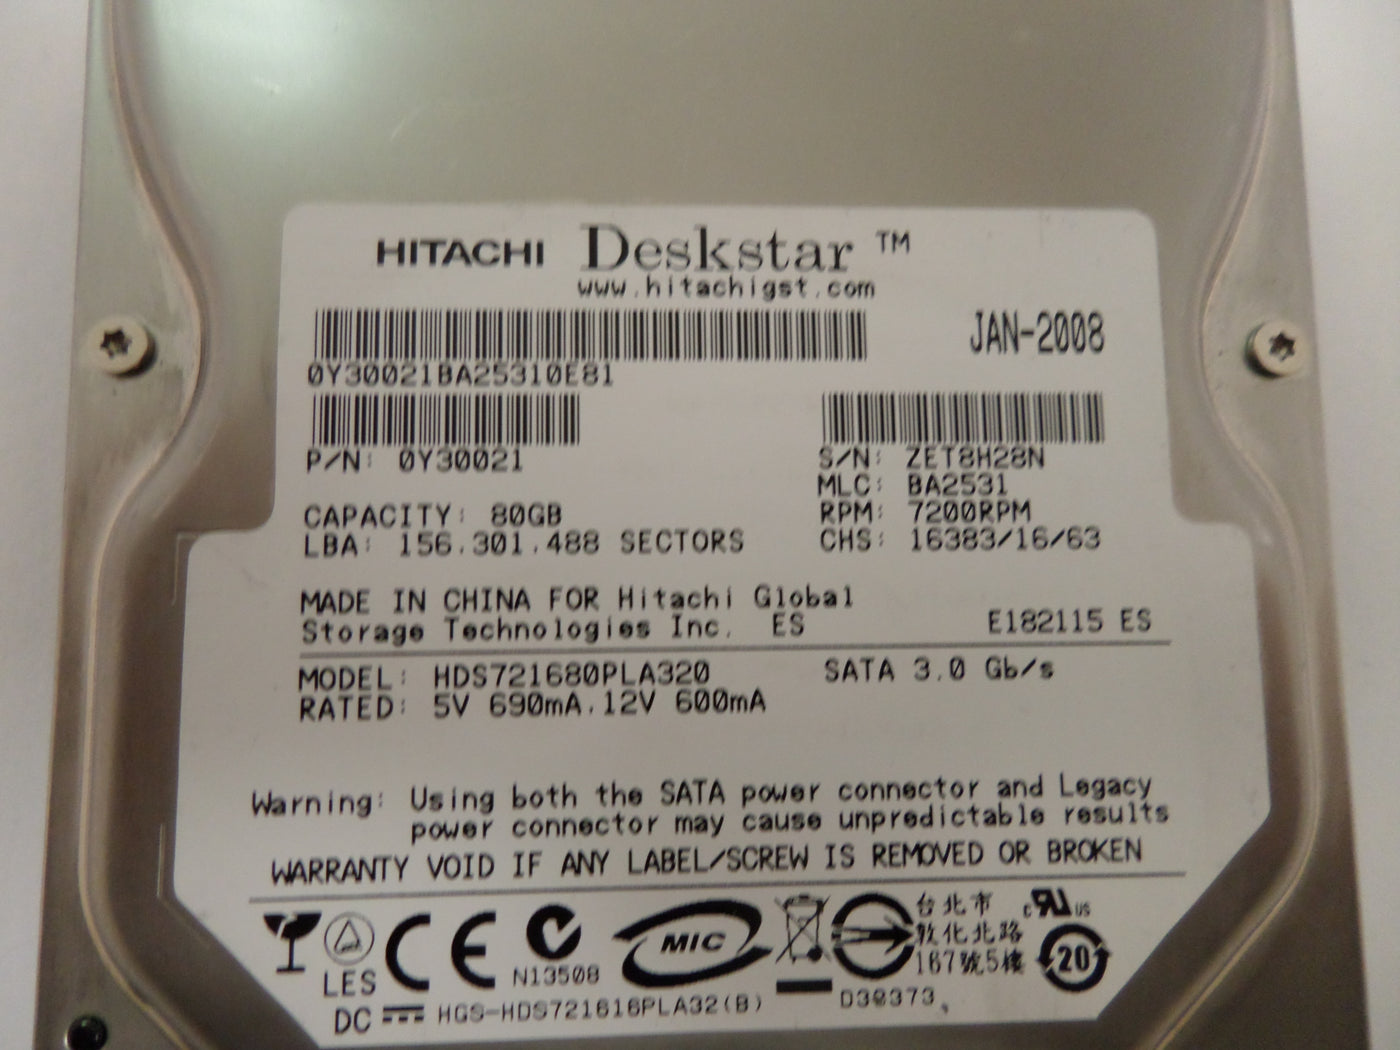 PR15521_0Y30021_HITACHI SATA DESKSTAR 80GB 3.5" HDD - Image3